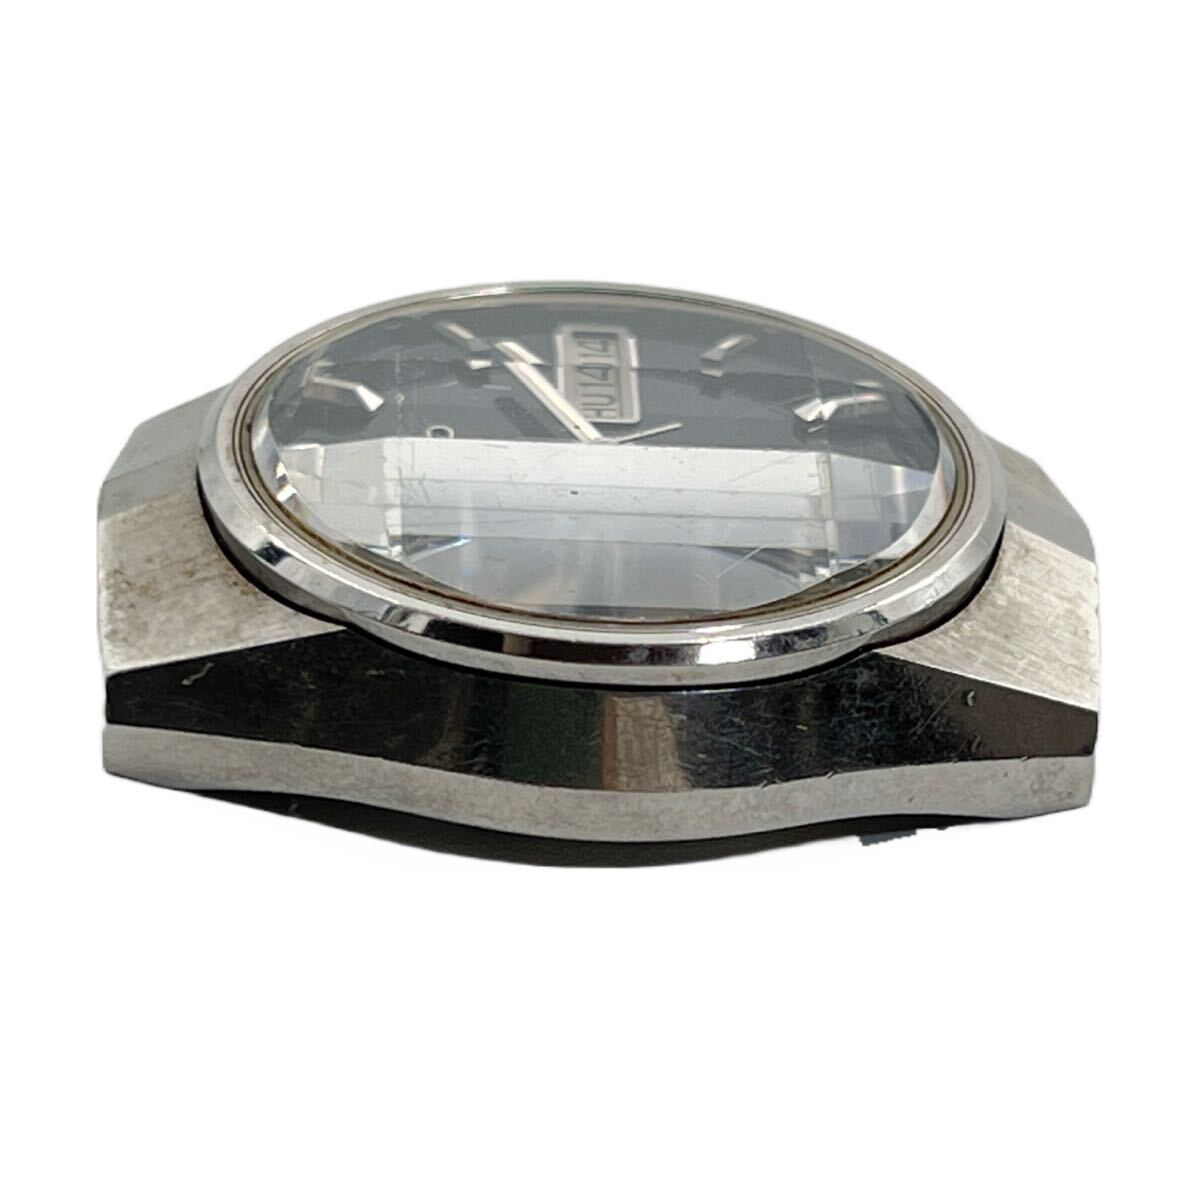 稼働 現状品 SEIKO LM セイコー ロードマチック 5216-7090 AT 自動巻 青文字盤 デイデイト スペシャル 25石 メンズ腕時計 カットガラス _画像3